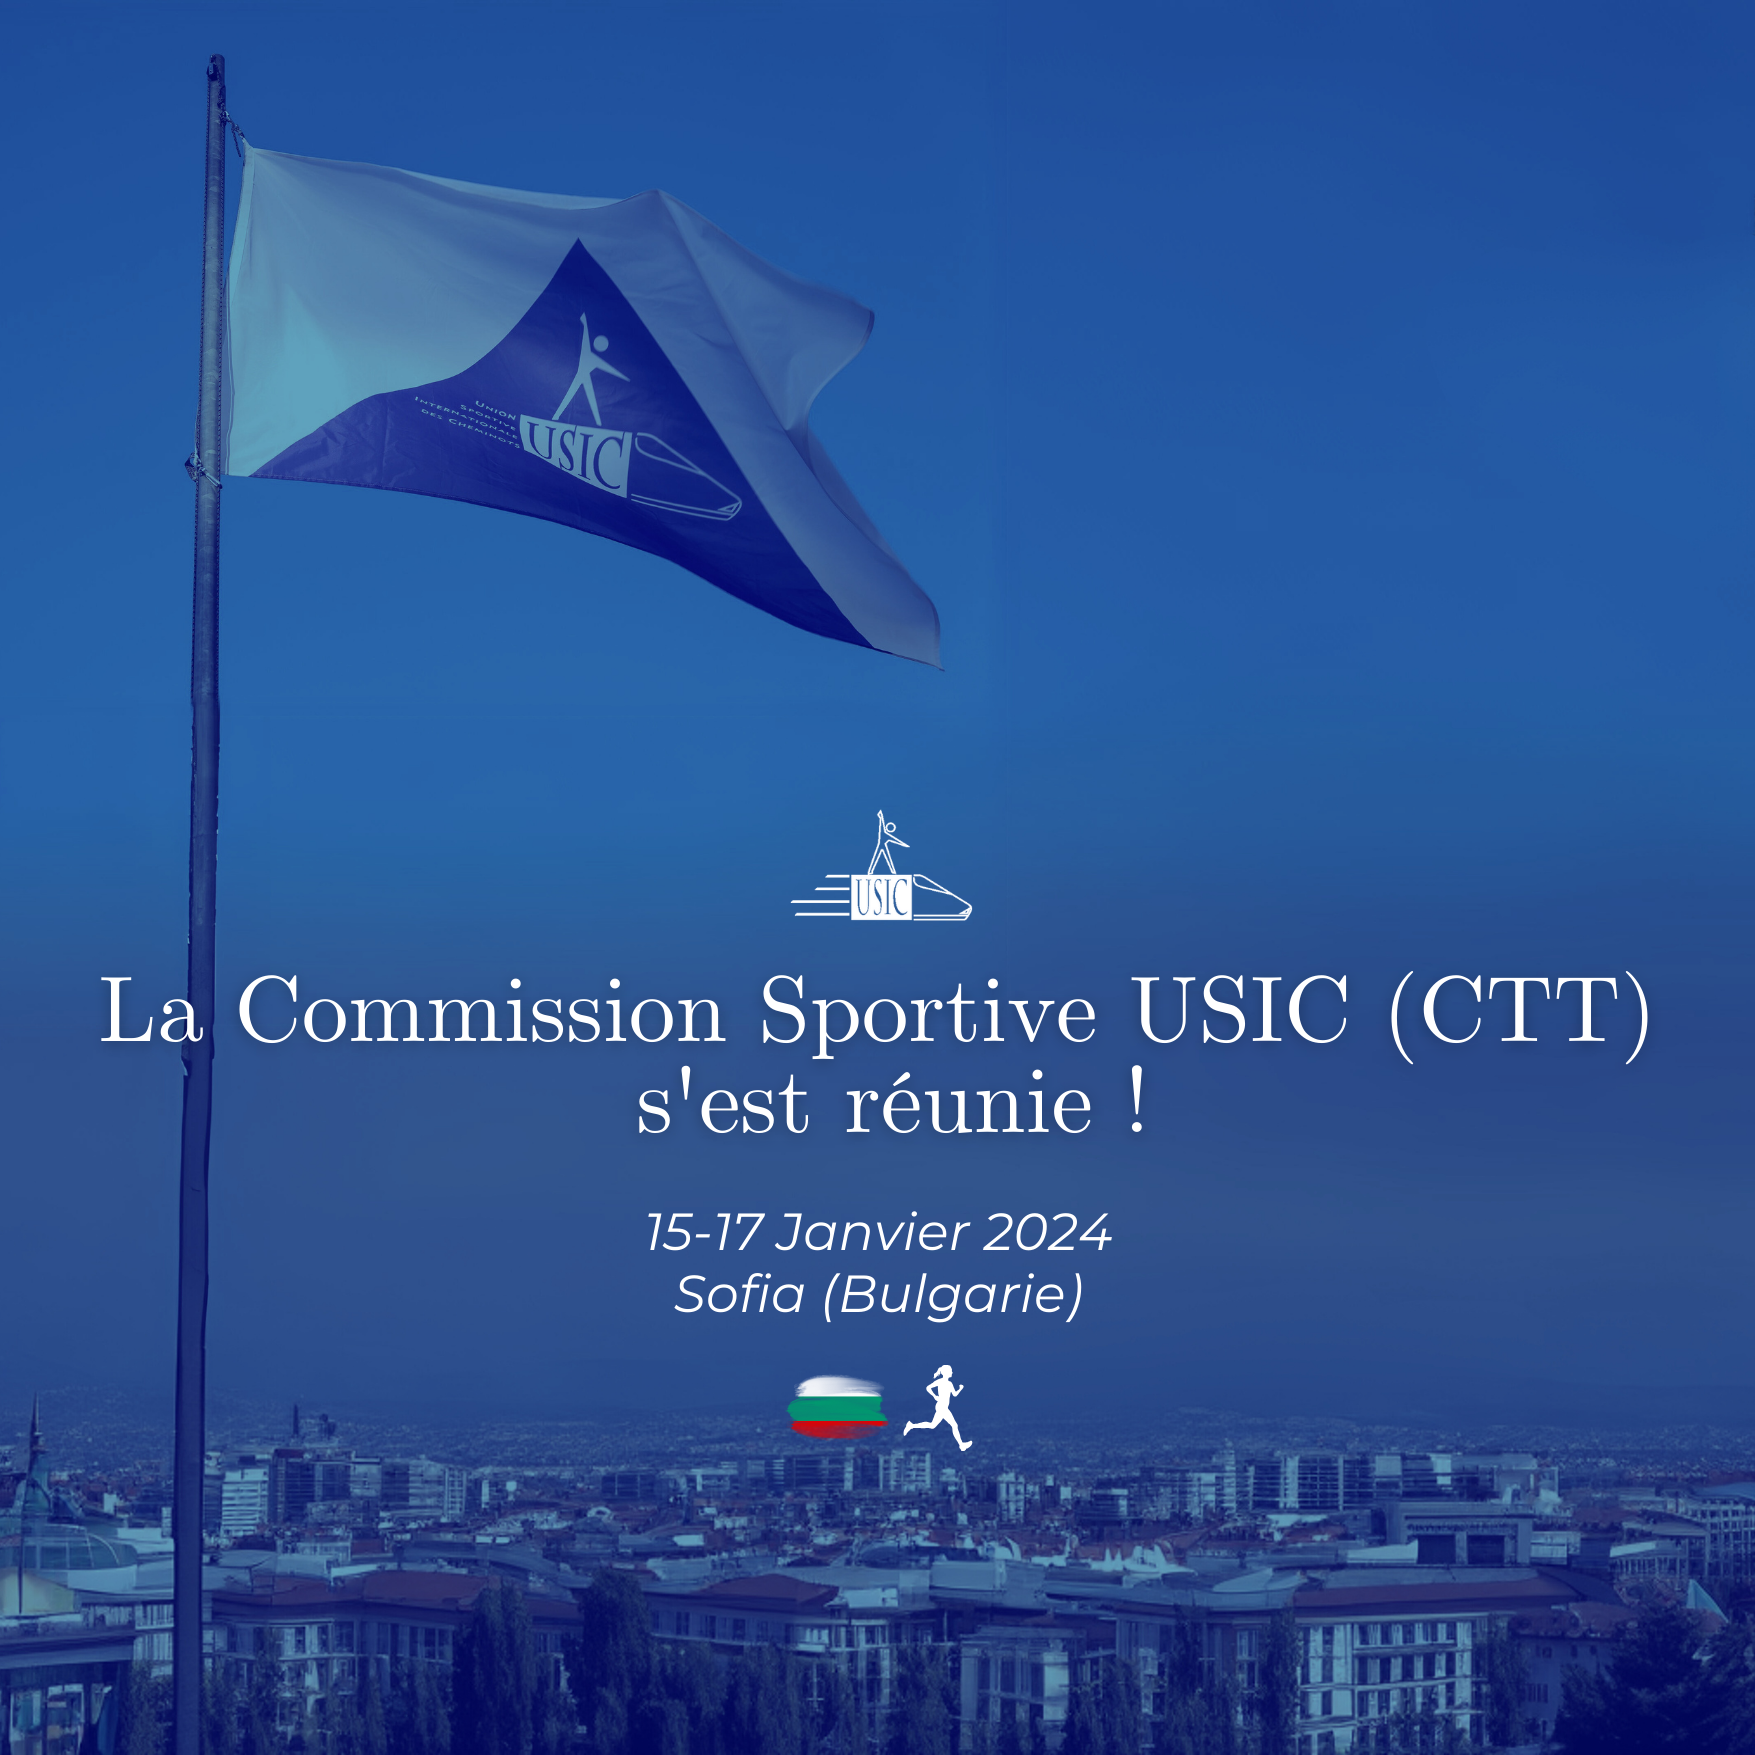 La Commission Sportive USIC (CTT) s'est réunie du 15 au 17 Janvier 2024 à Sofia (Bulgarie) afin de préparer la saison sportive USIC 2024.